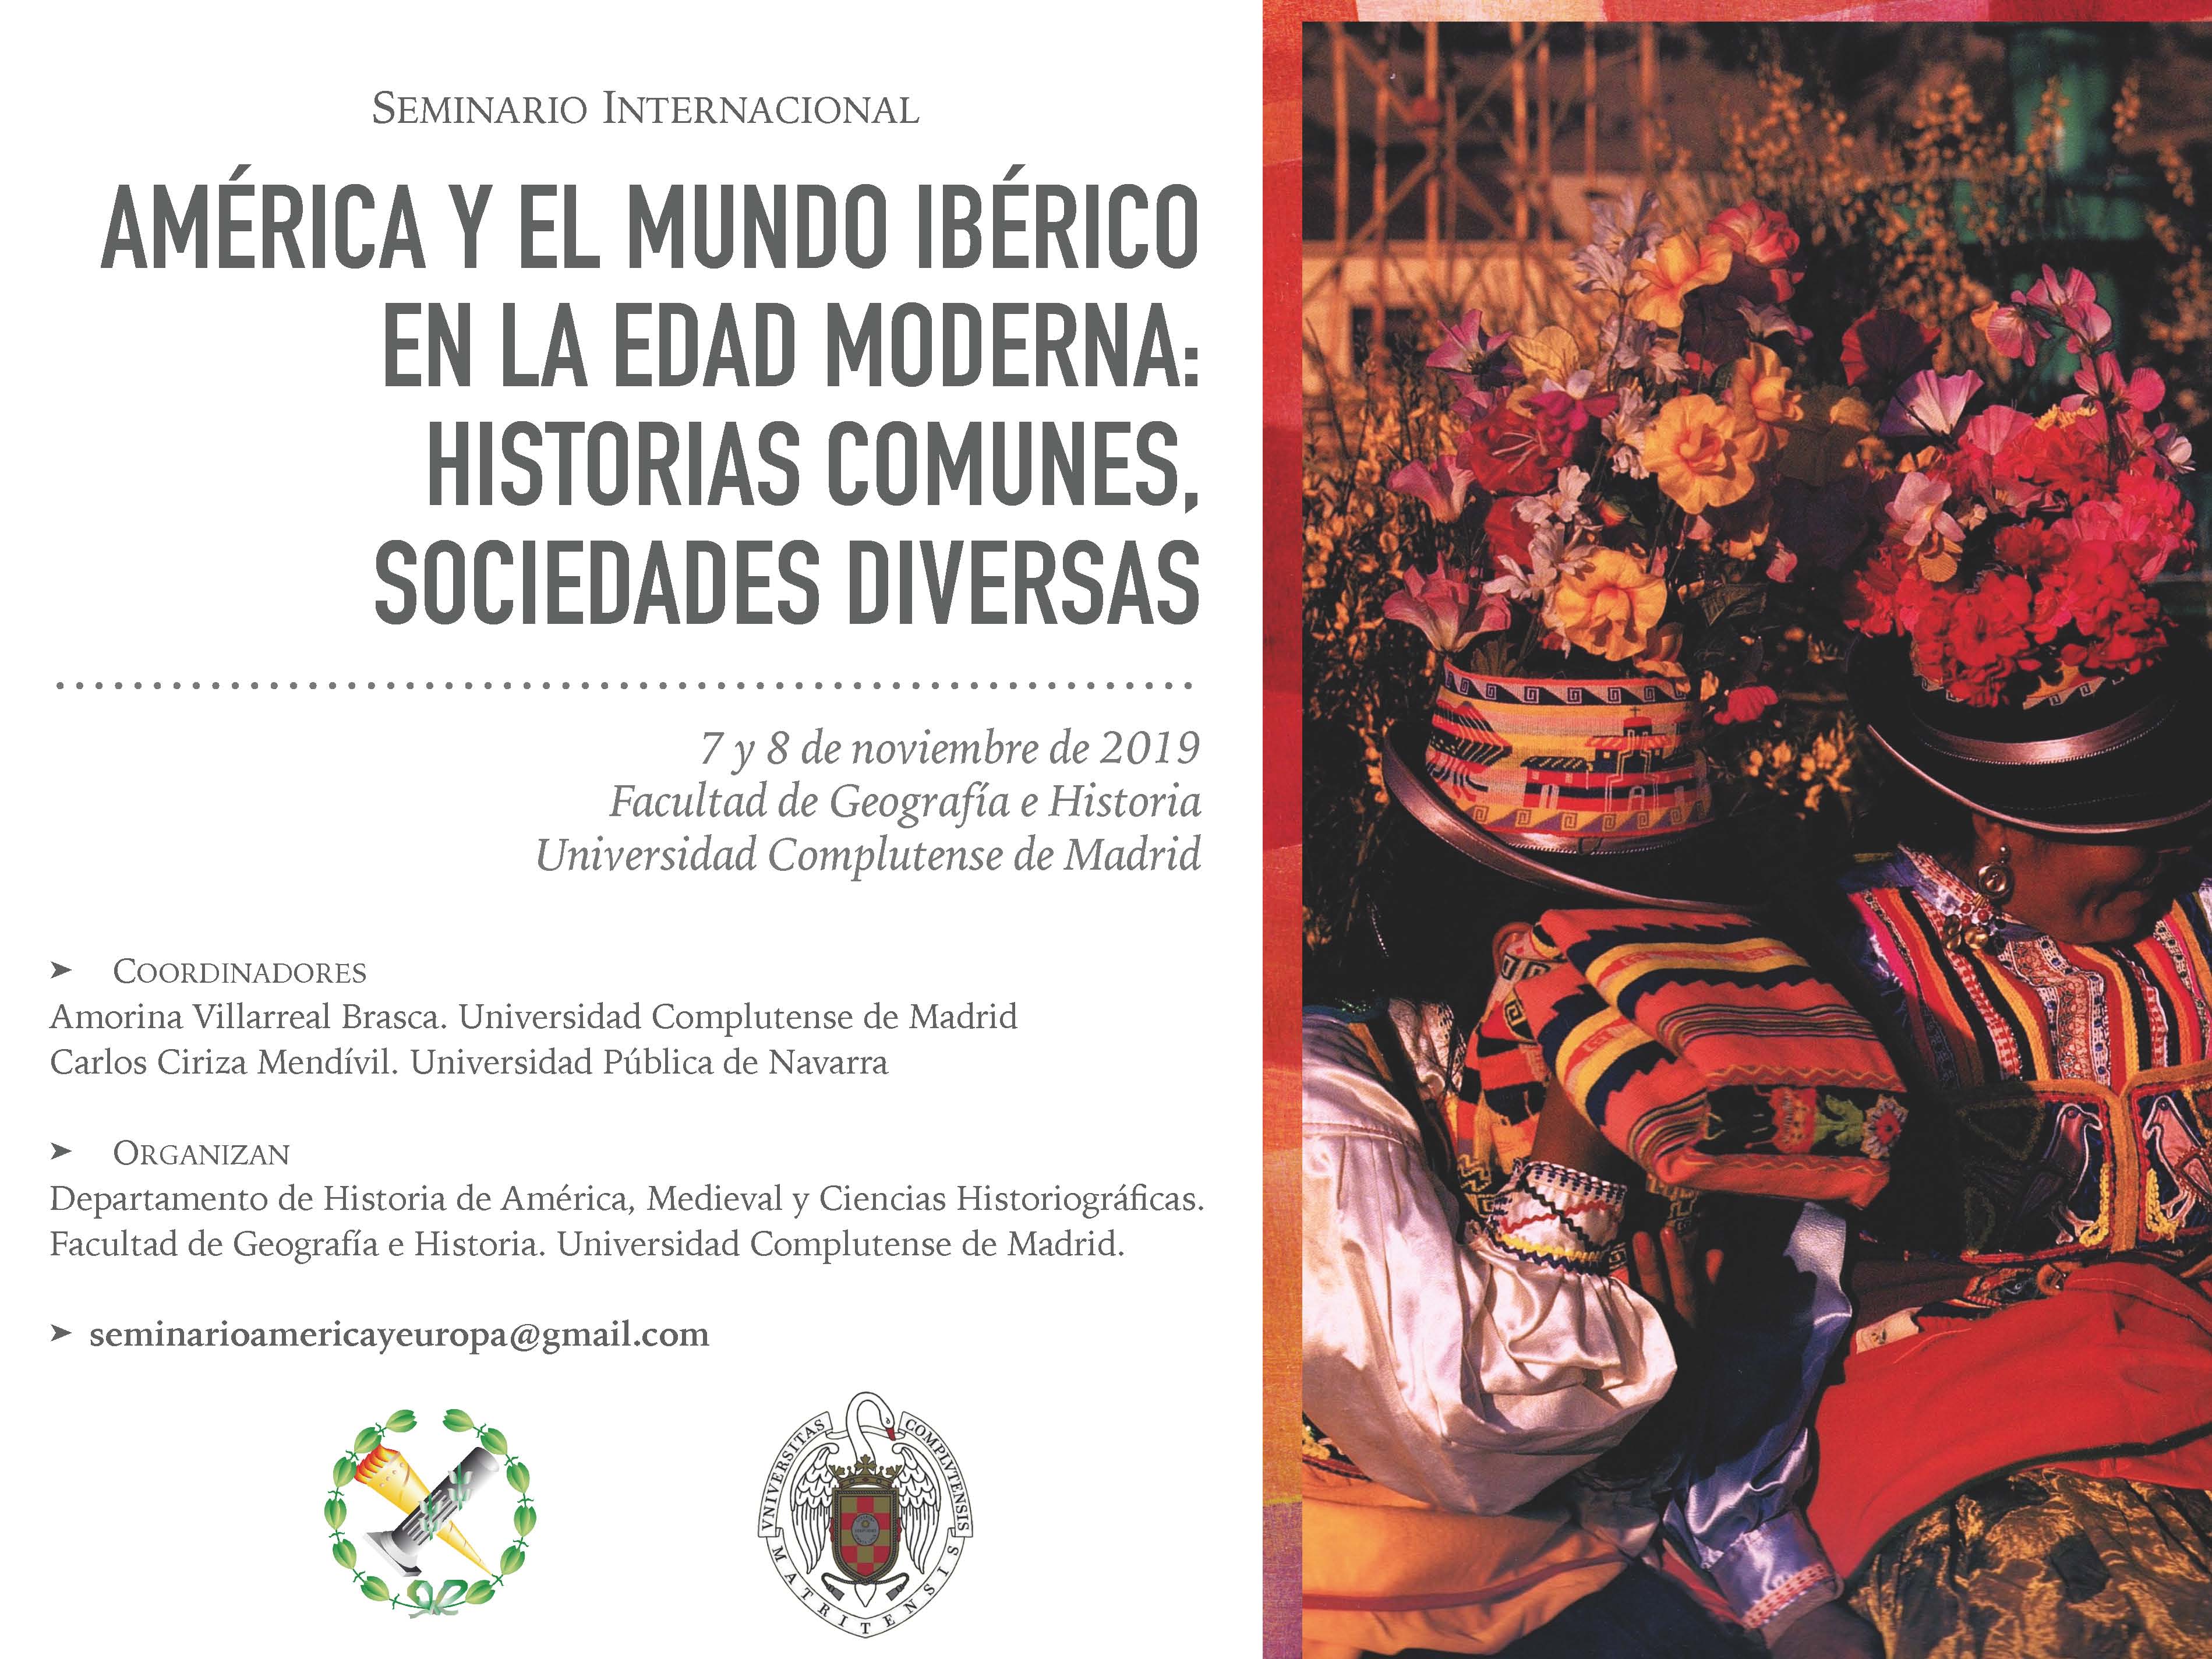 AMÉRICA Y EL MUNDO IBÉRICO EN LA EDAD MODERNA: HISTORIAS COMUNES, SOCIEDADES DIVERSAS